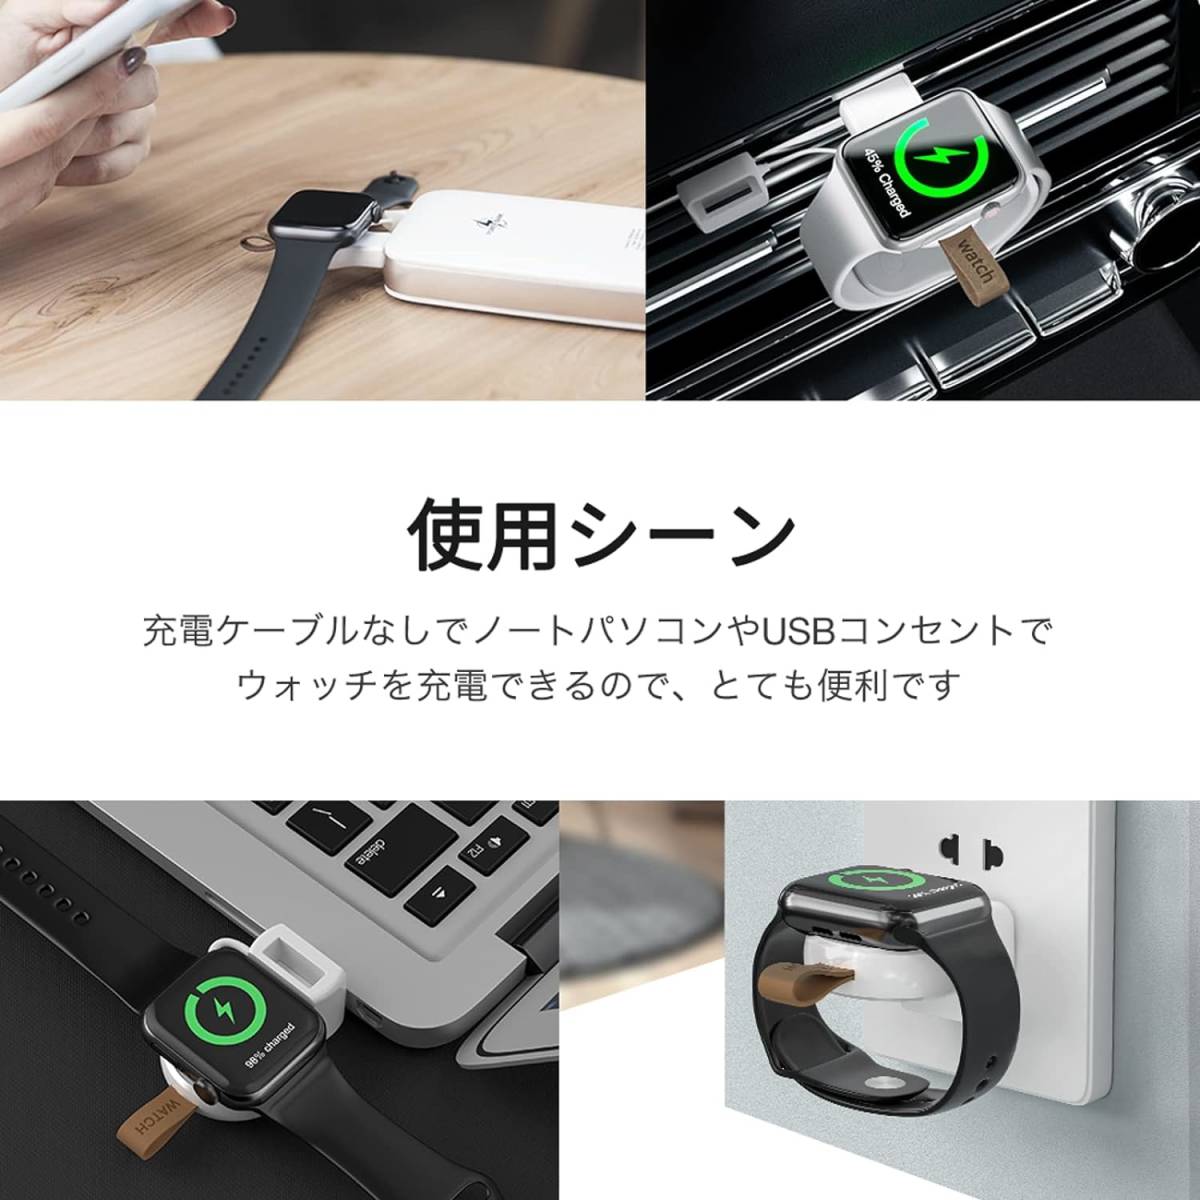 ホワイト NEWDERY Apple Watch 充電器 アップルウォッチ USB-A 充電ケーブル 充電機 ワイヤレス 急速充電_画像5